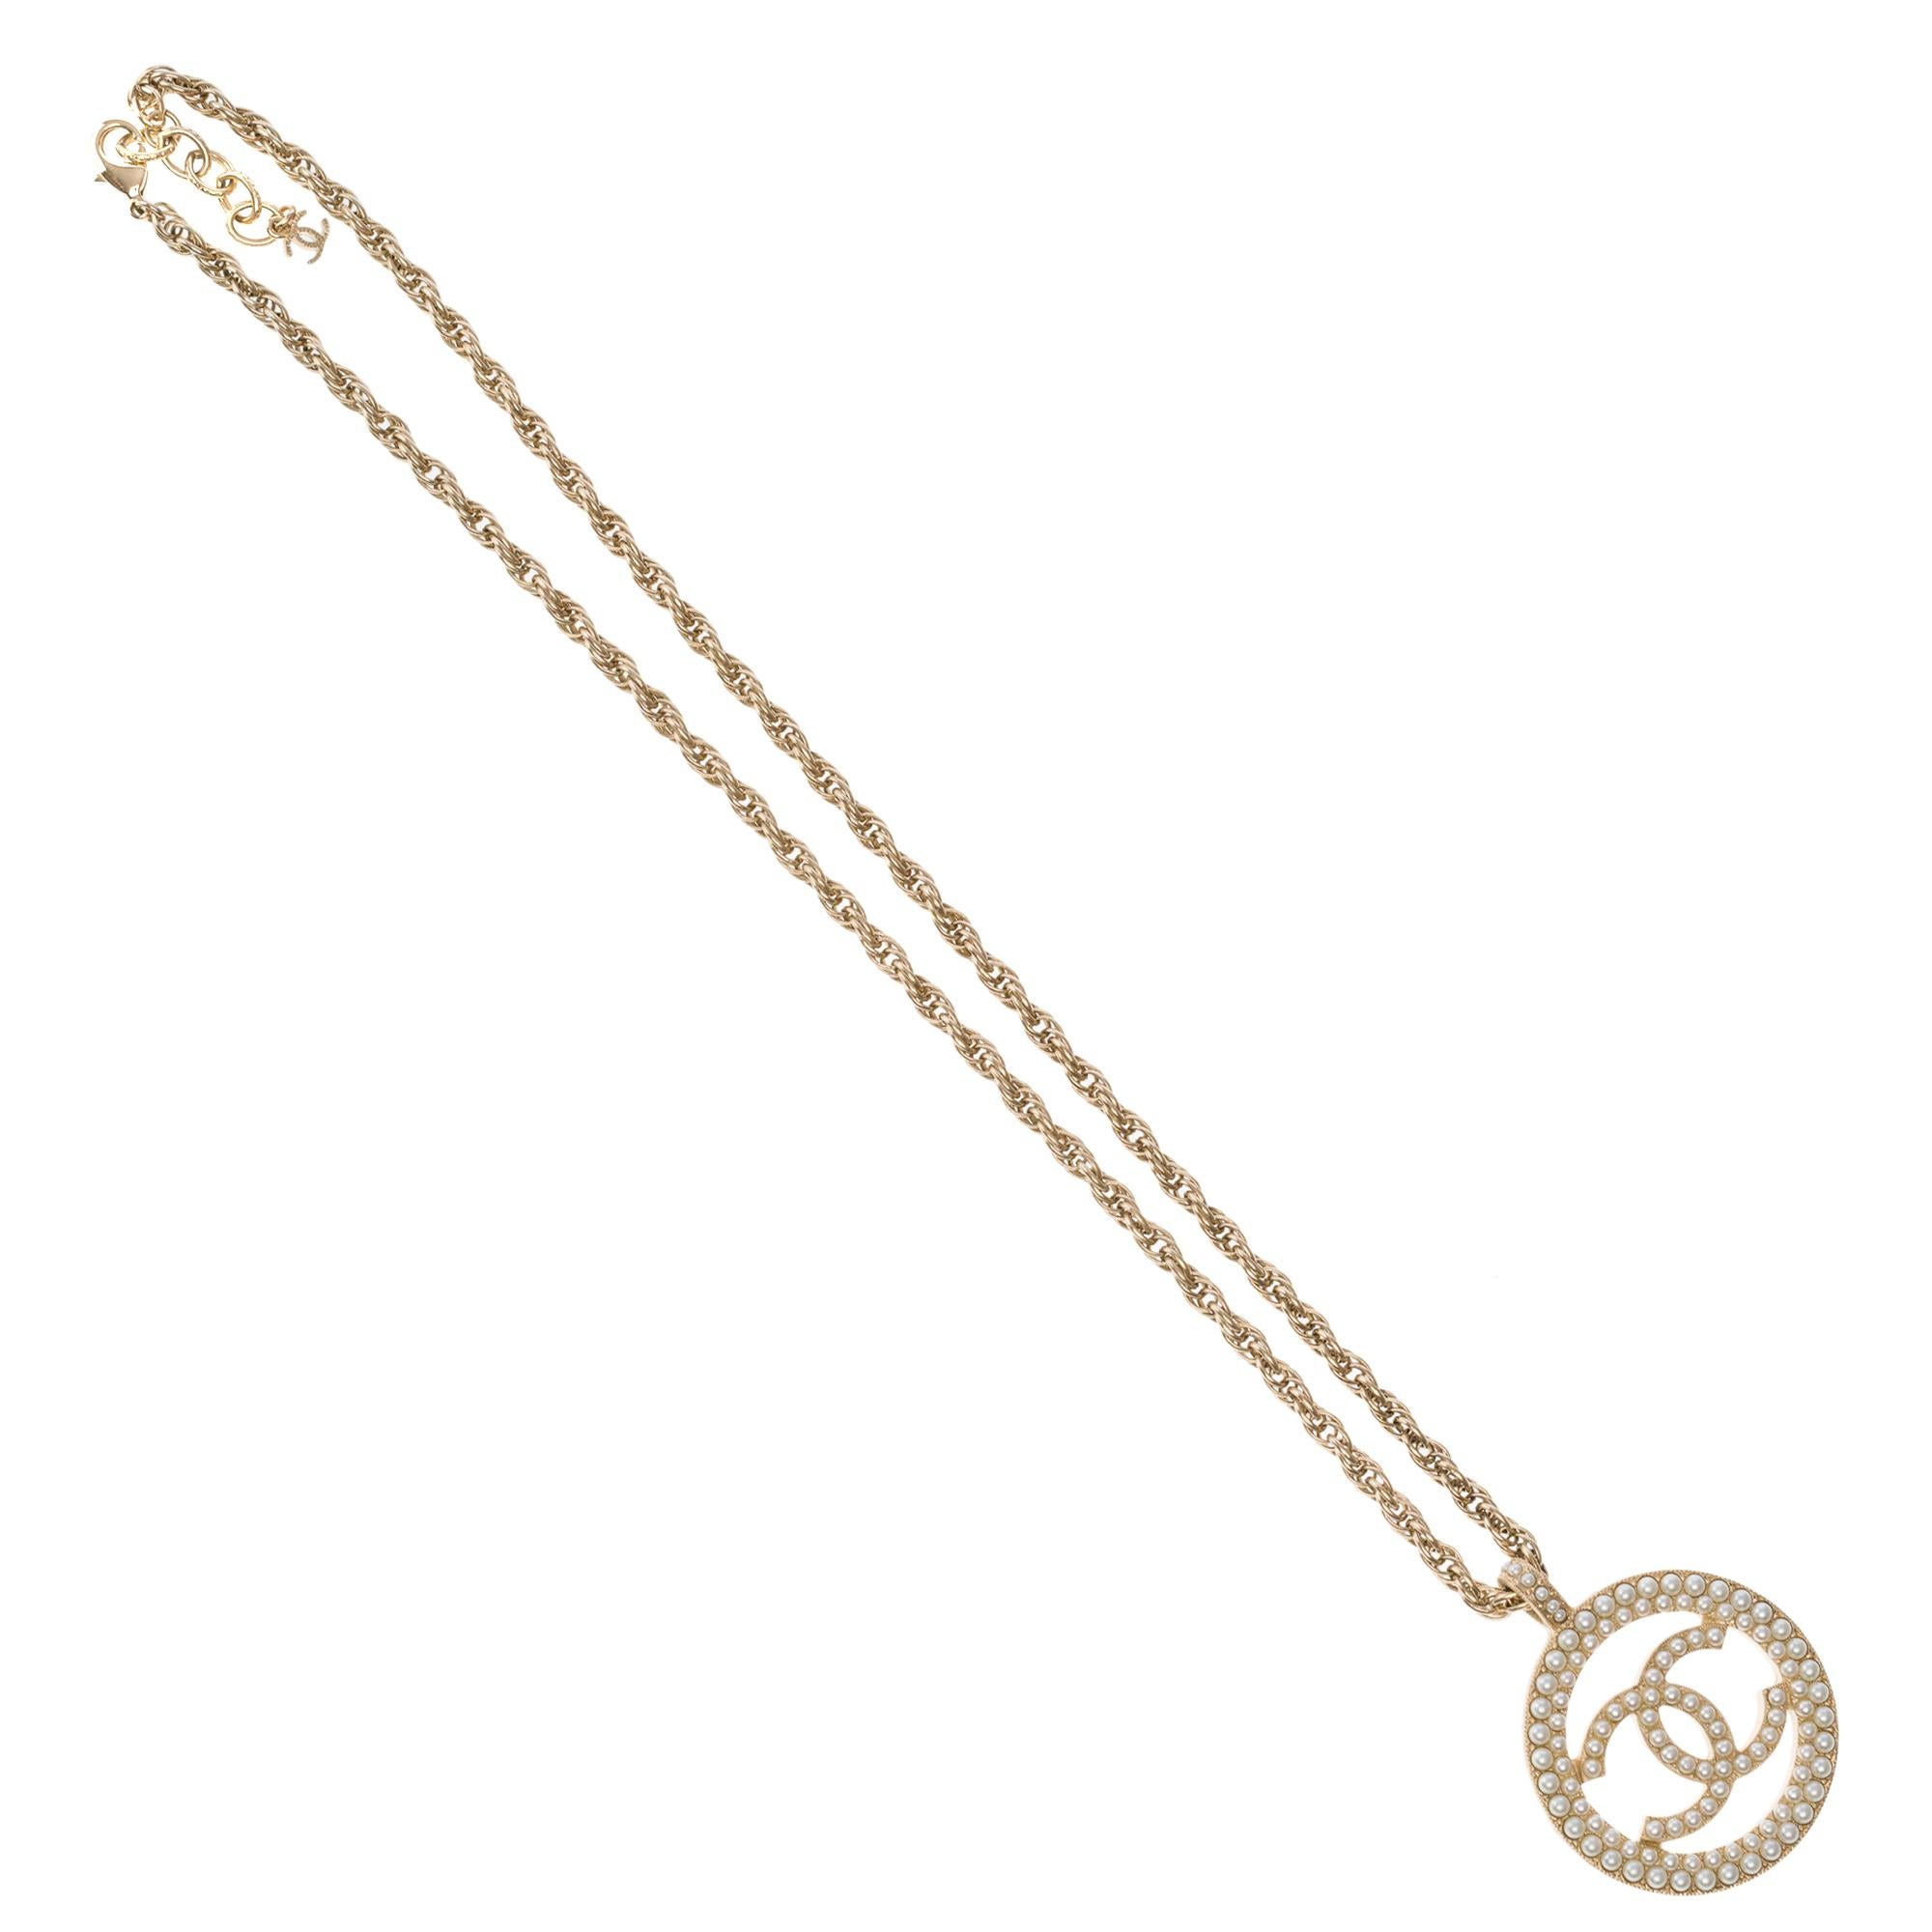 Halskette Anhänger Chanel Logo CC in Gold Farbe Metall und faux Perlen 
Länge: 35 cm (13,78 Zoll)
Breite des CC-Logos: 4,5 cm (1,77 Zoll)

Referenz: 101539

Allgemeiner Zustand: 7/10
Verkauft ohne Box